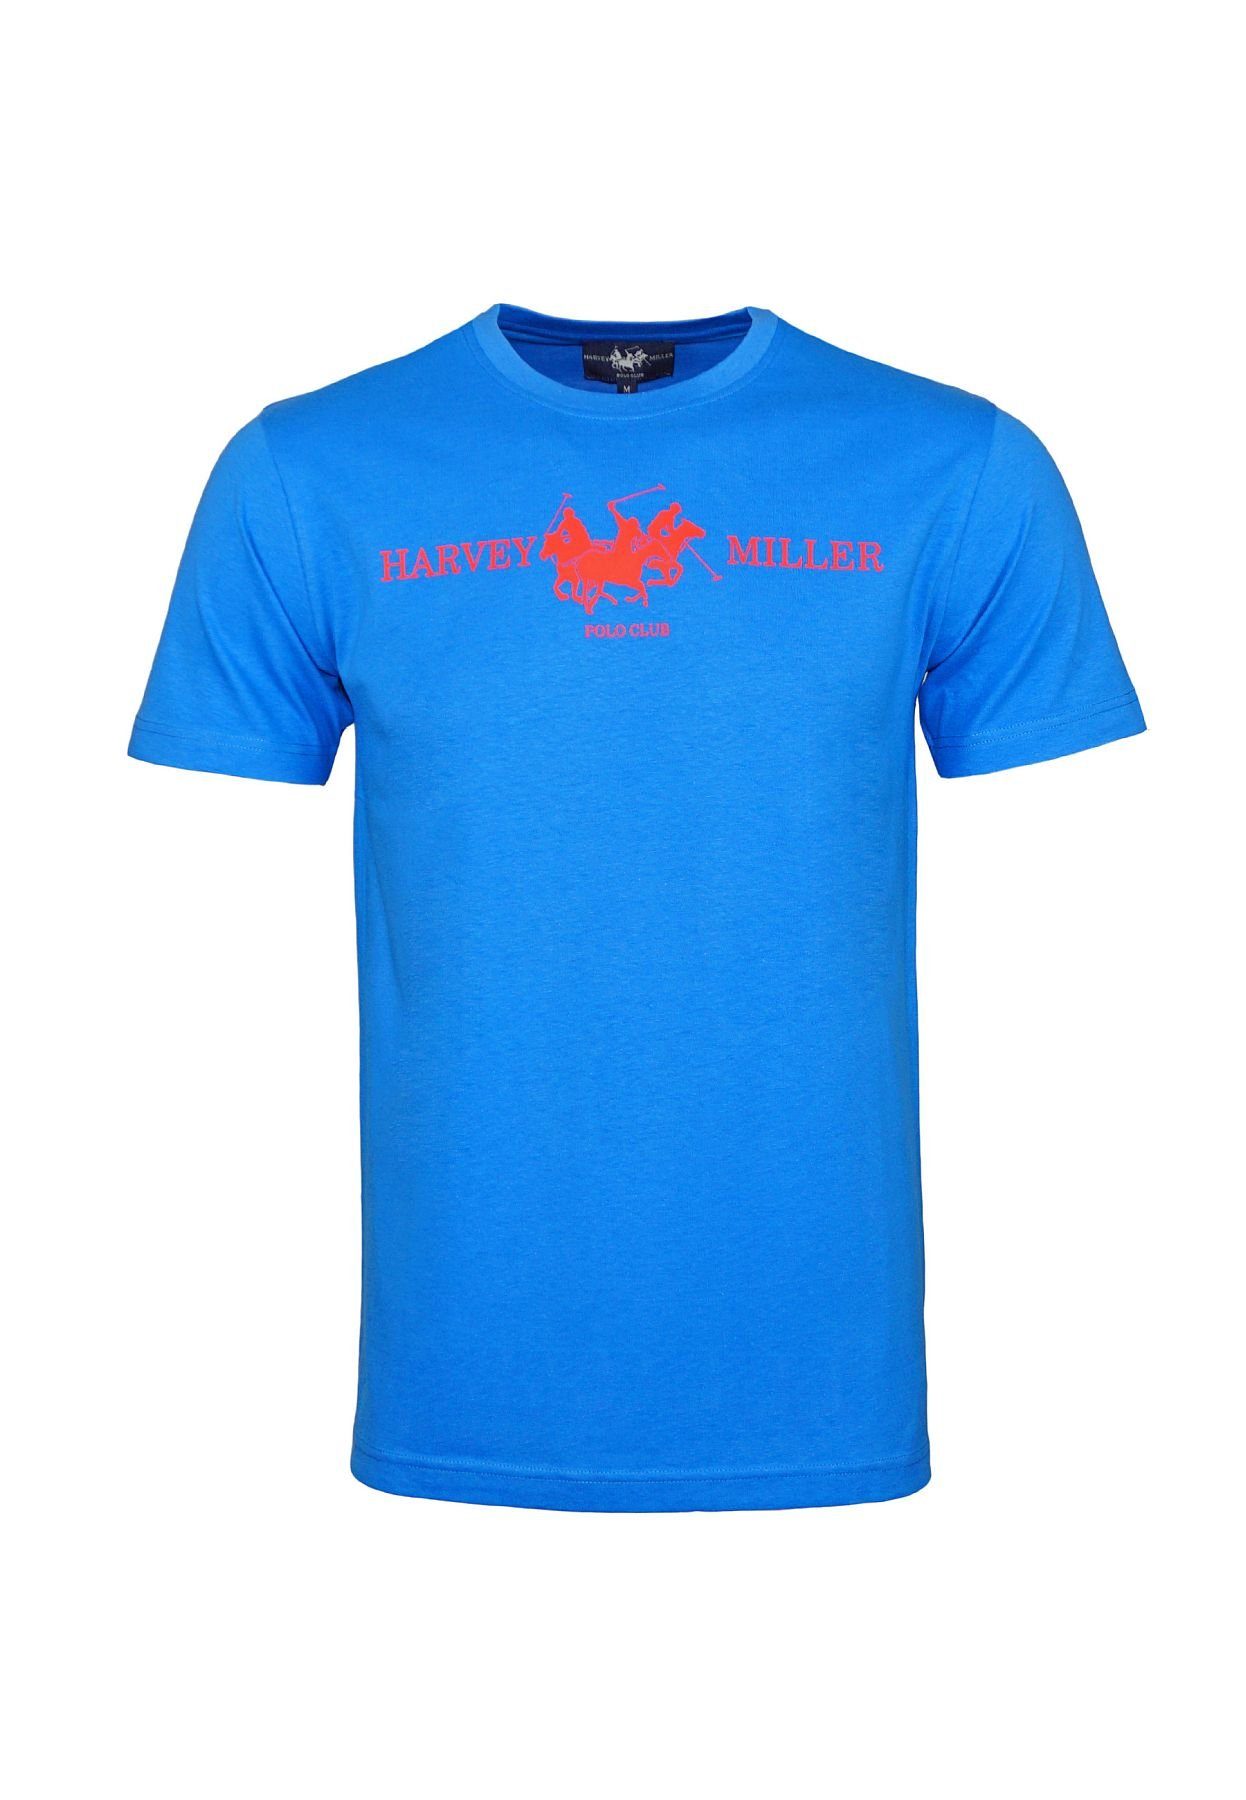 Harvey Miller T-Shirt T-Shirt Shortsleeve HM Basic Rundhals blau